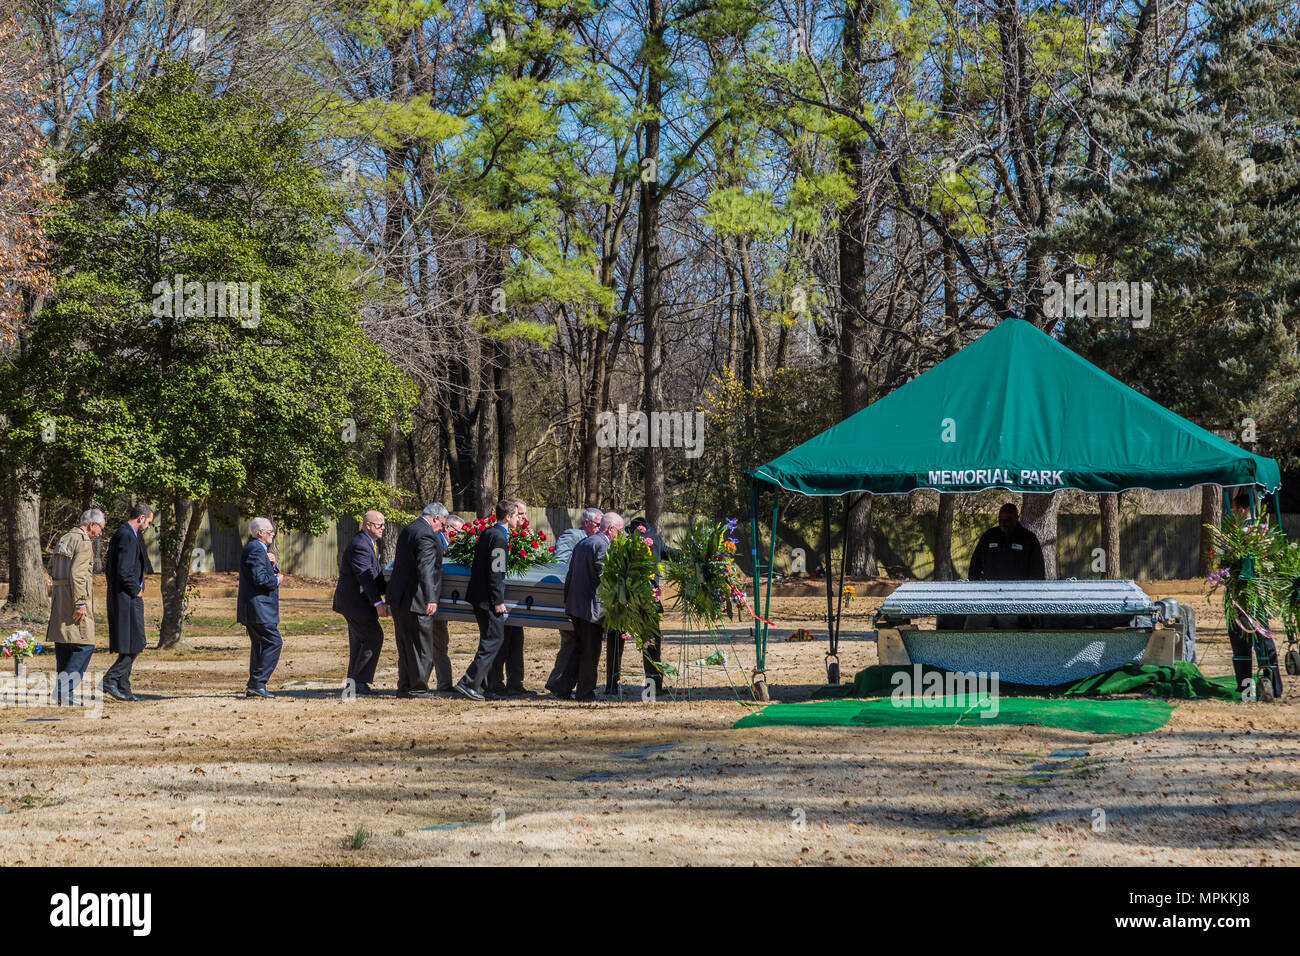 Los portadores de la encuesta llevan un ataúd con flores al lugar de entierro en un parque conmemorativo de Memphis, Tennessee Foto de stock